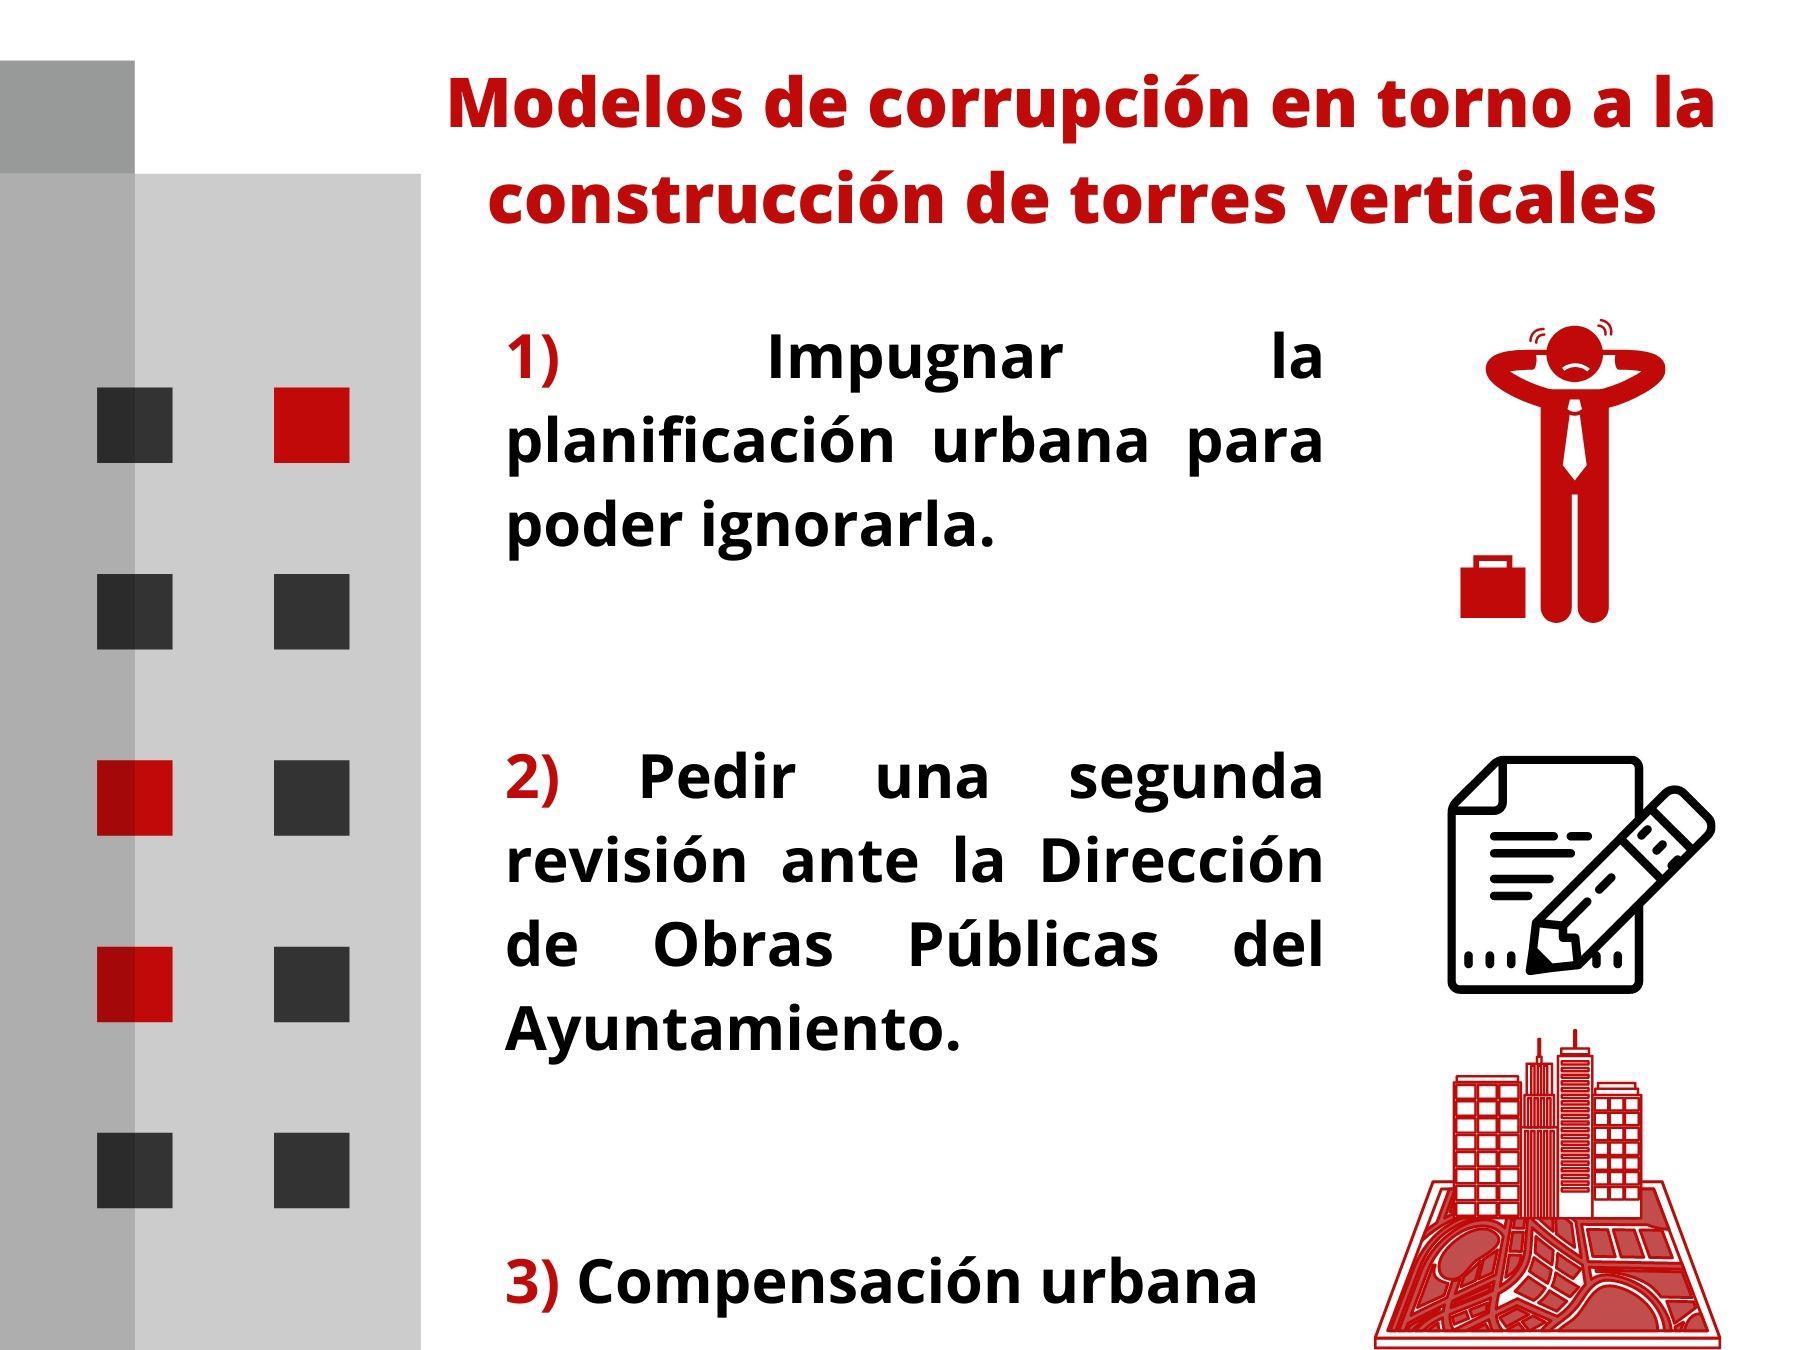 $!Guadalajara, la Ciudad Inhabitable: ¿Redensificación o destrucción de vivienda?